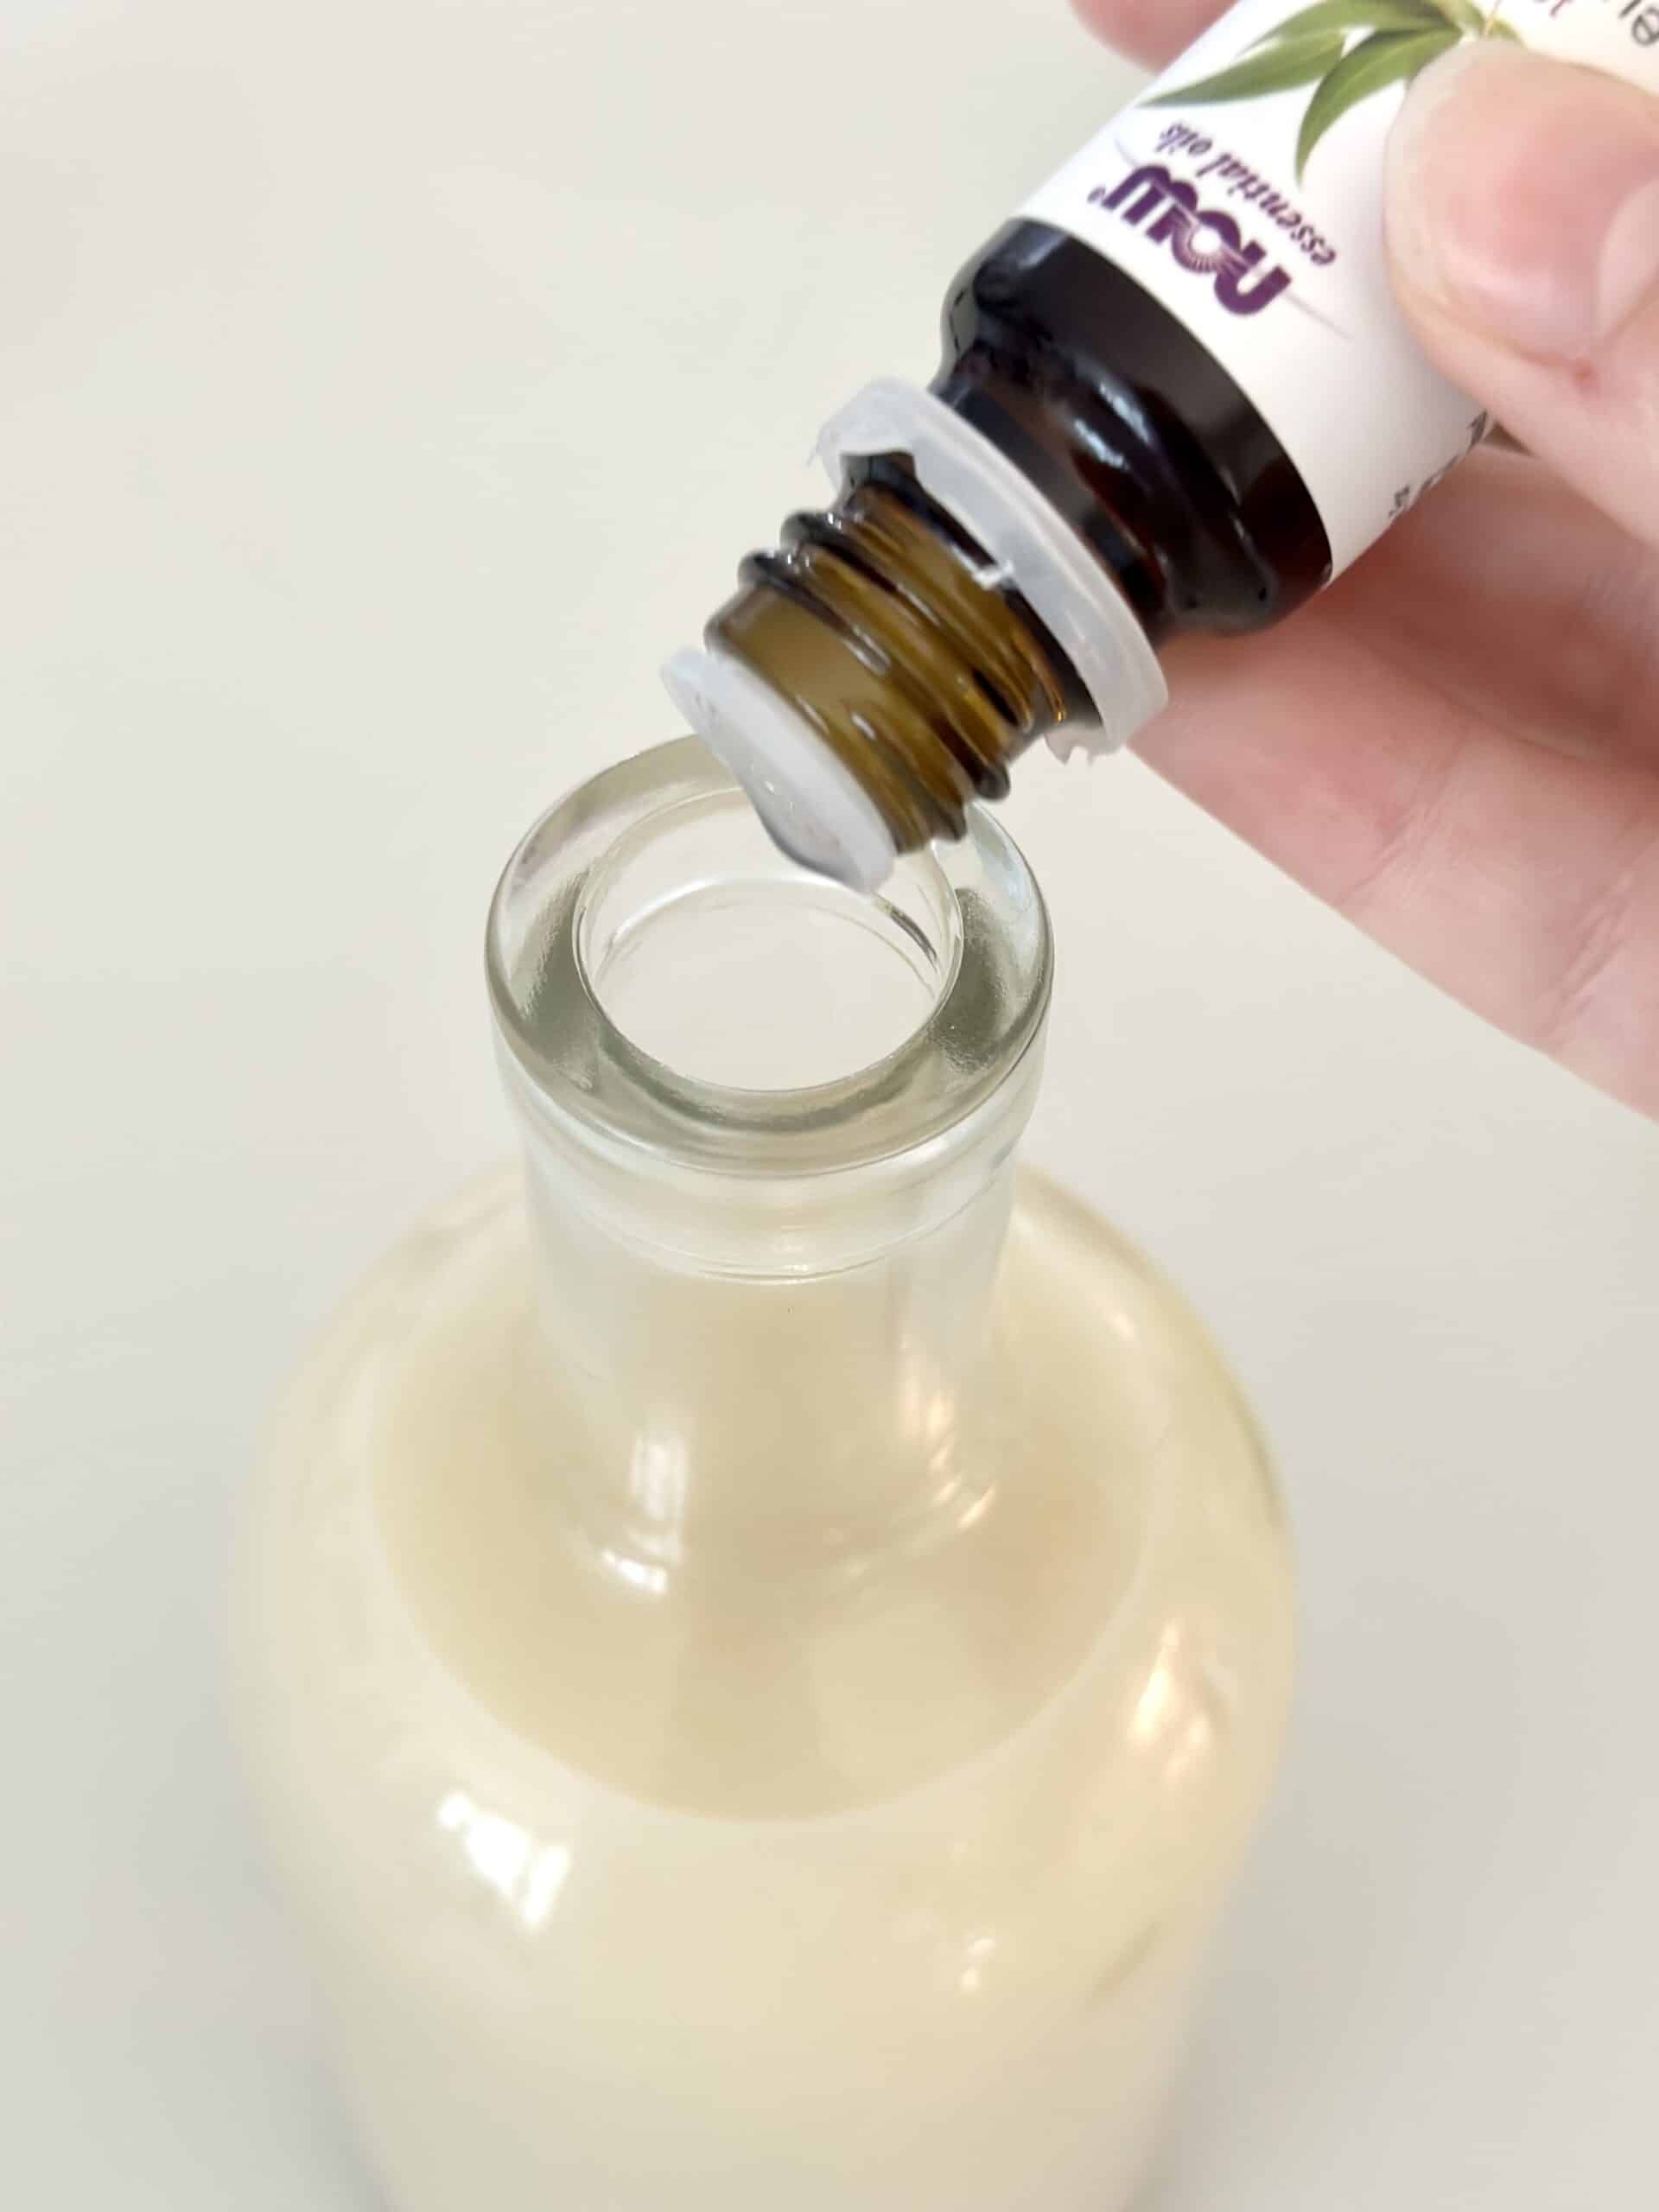 Adding essential oils to pH shampoo